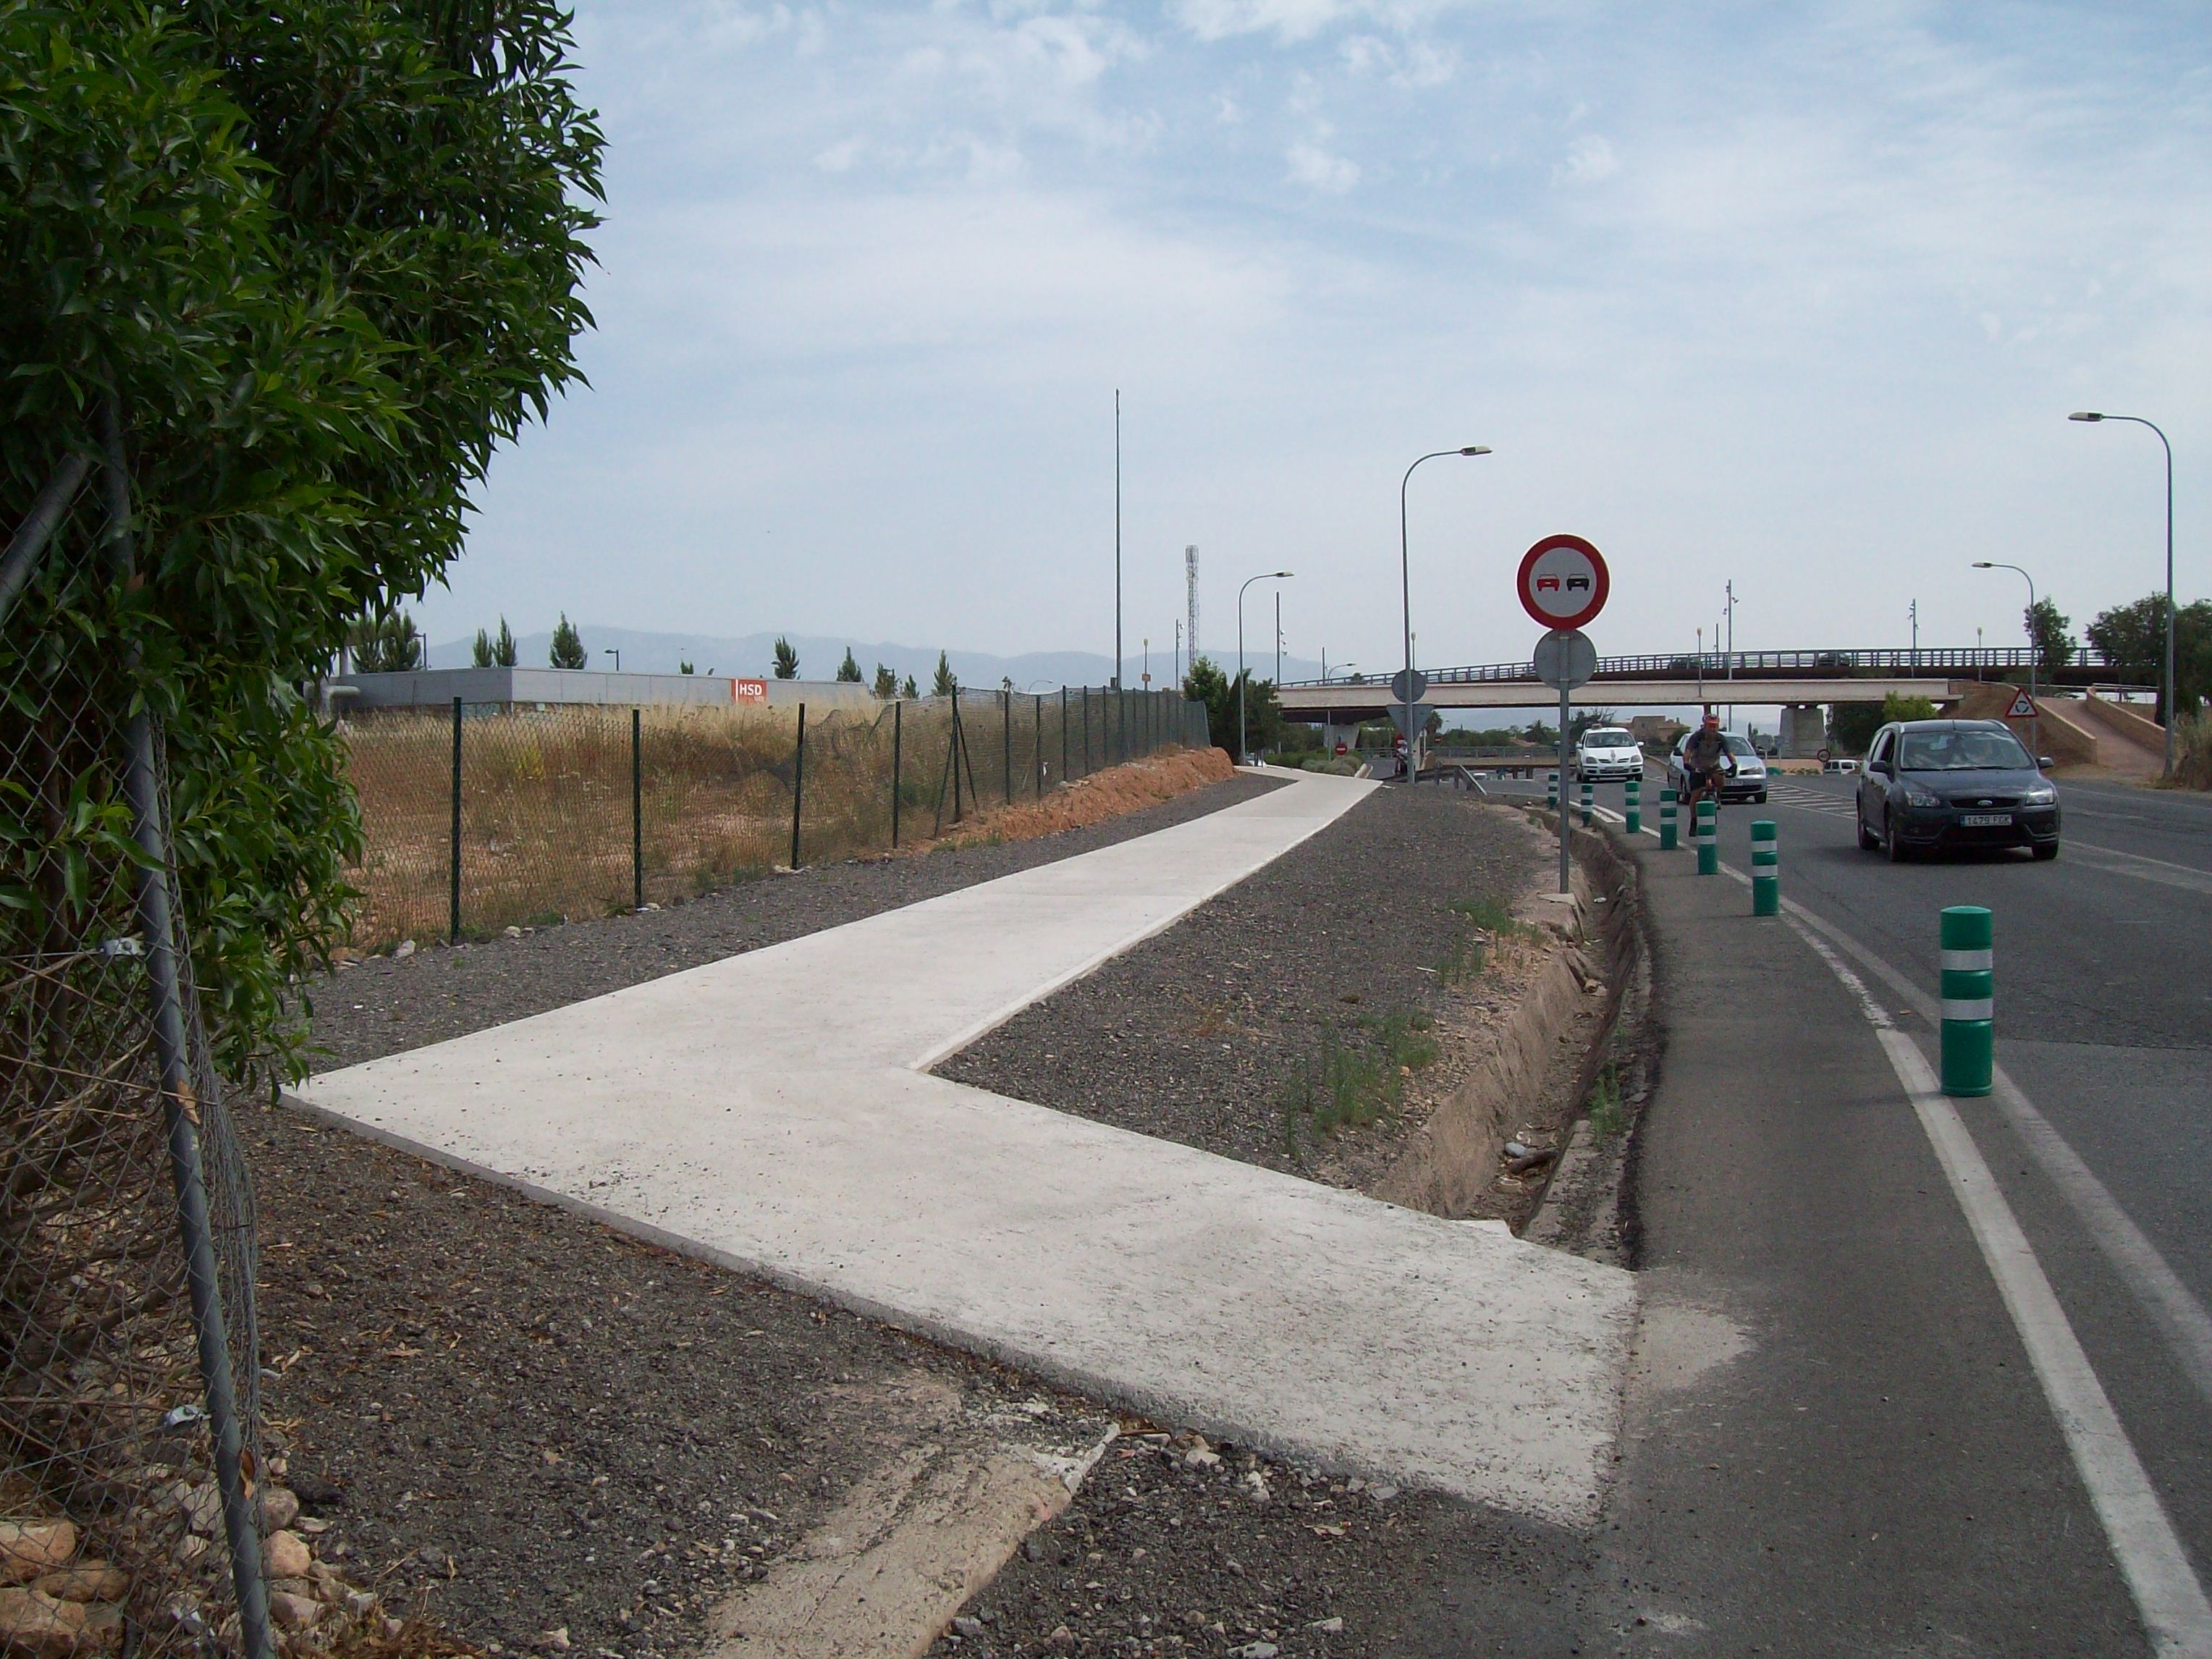 Mobilitat i Infraestructures signa el contracte del projecte del carril bici a Son Espases